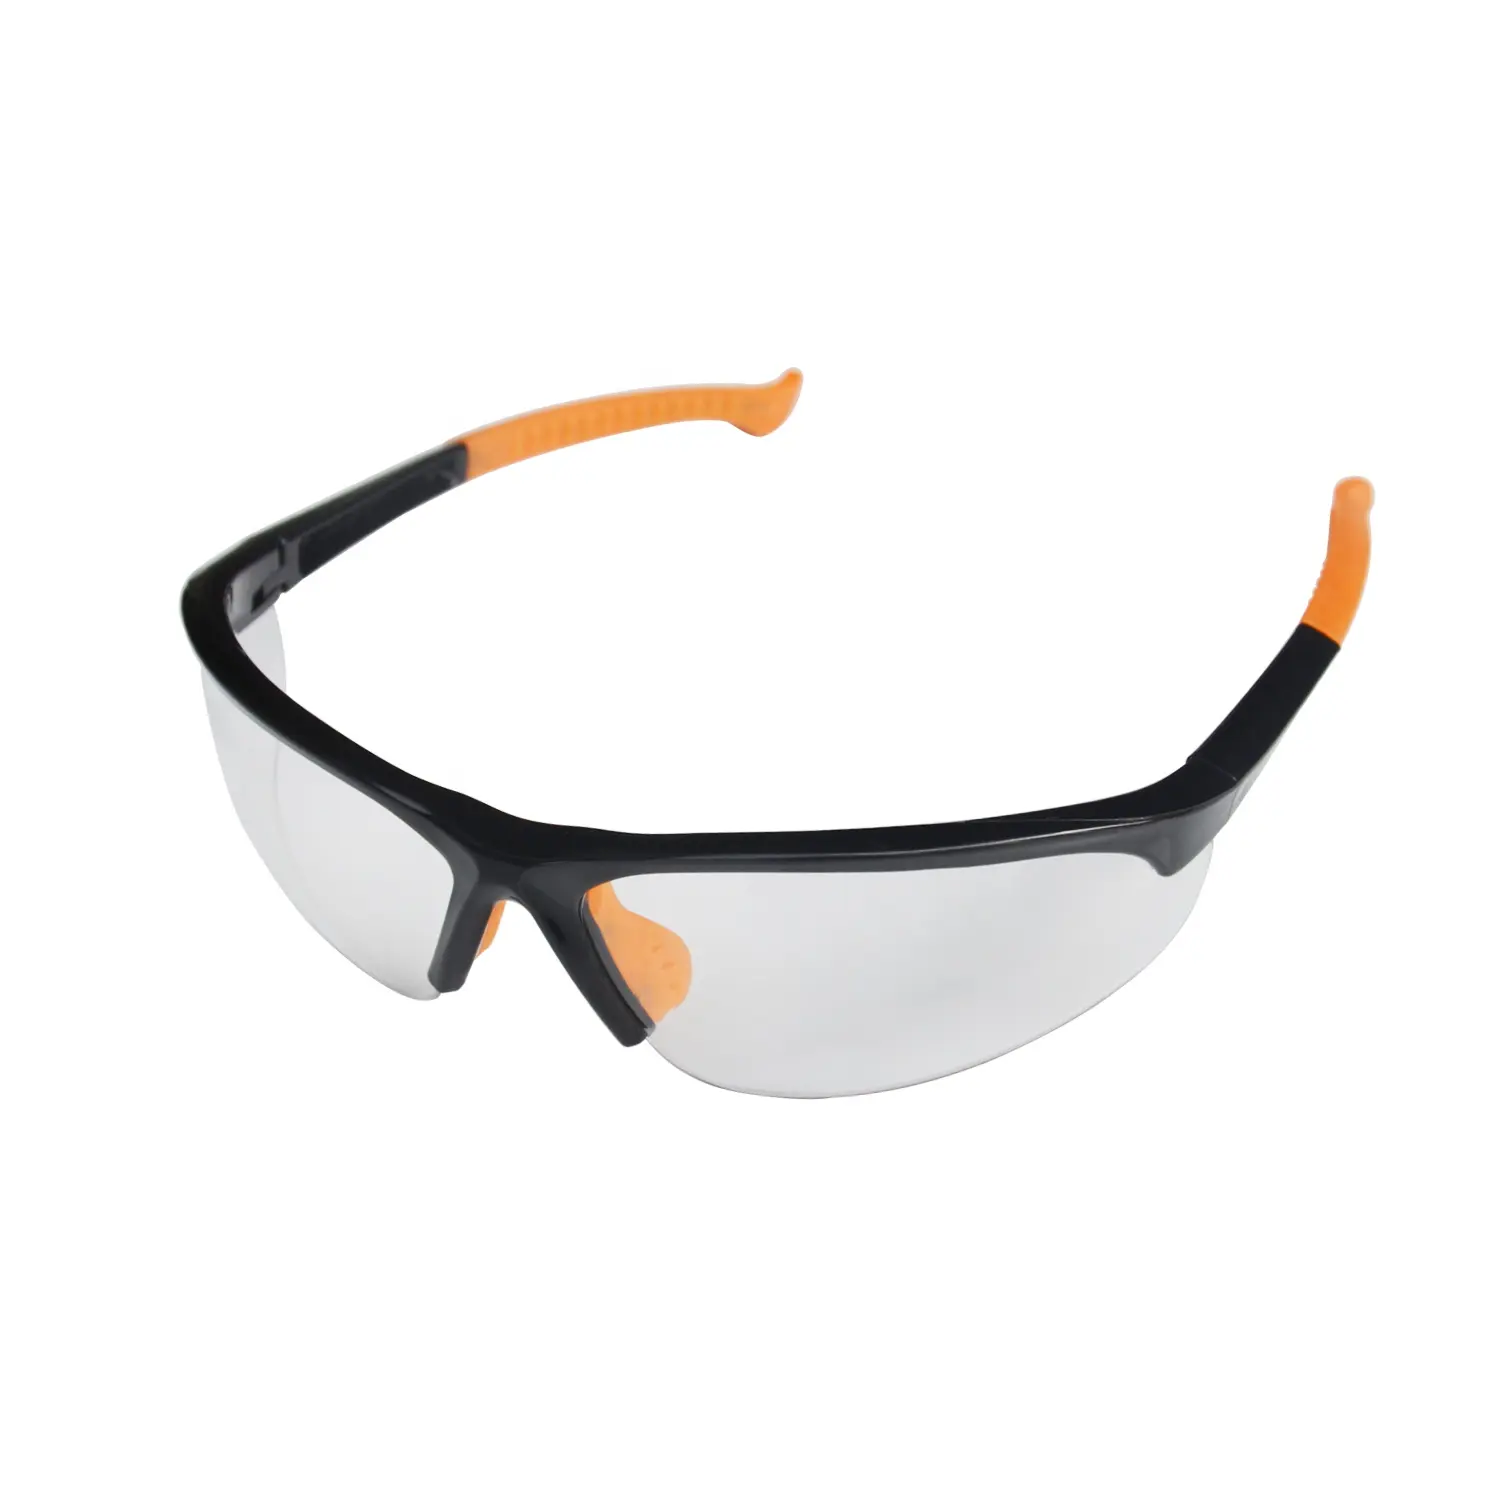 SG1034 Gafas DE TRABAJO resistentes a impactos Gafas protectoras Gafas de seguridad